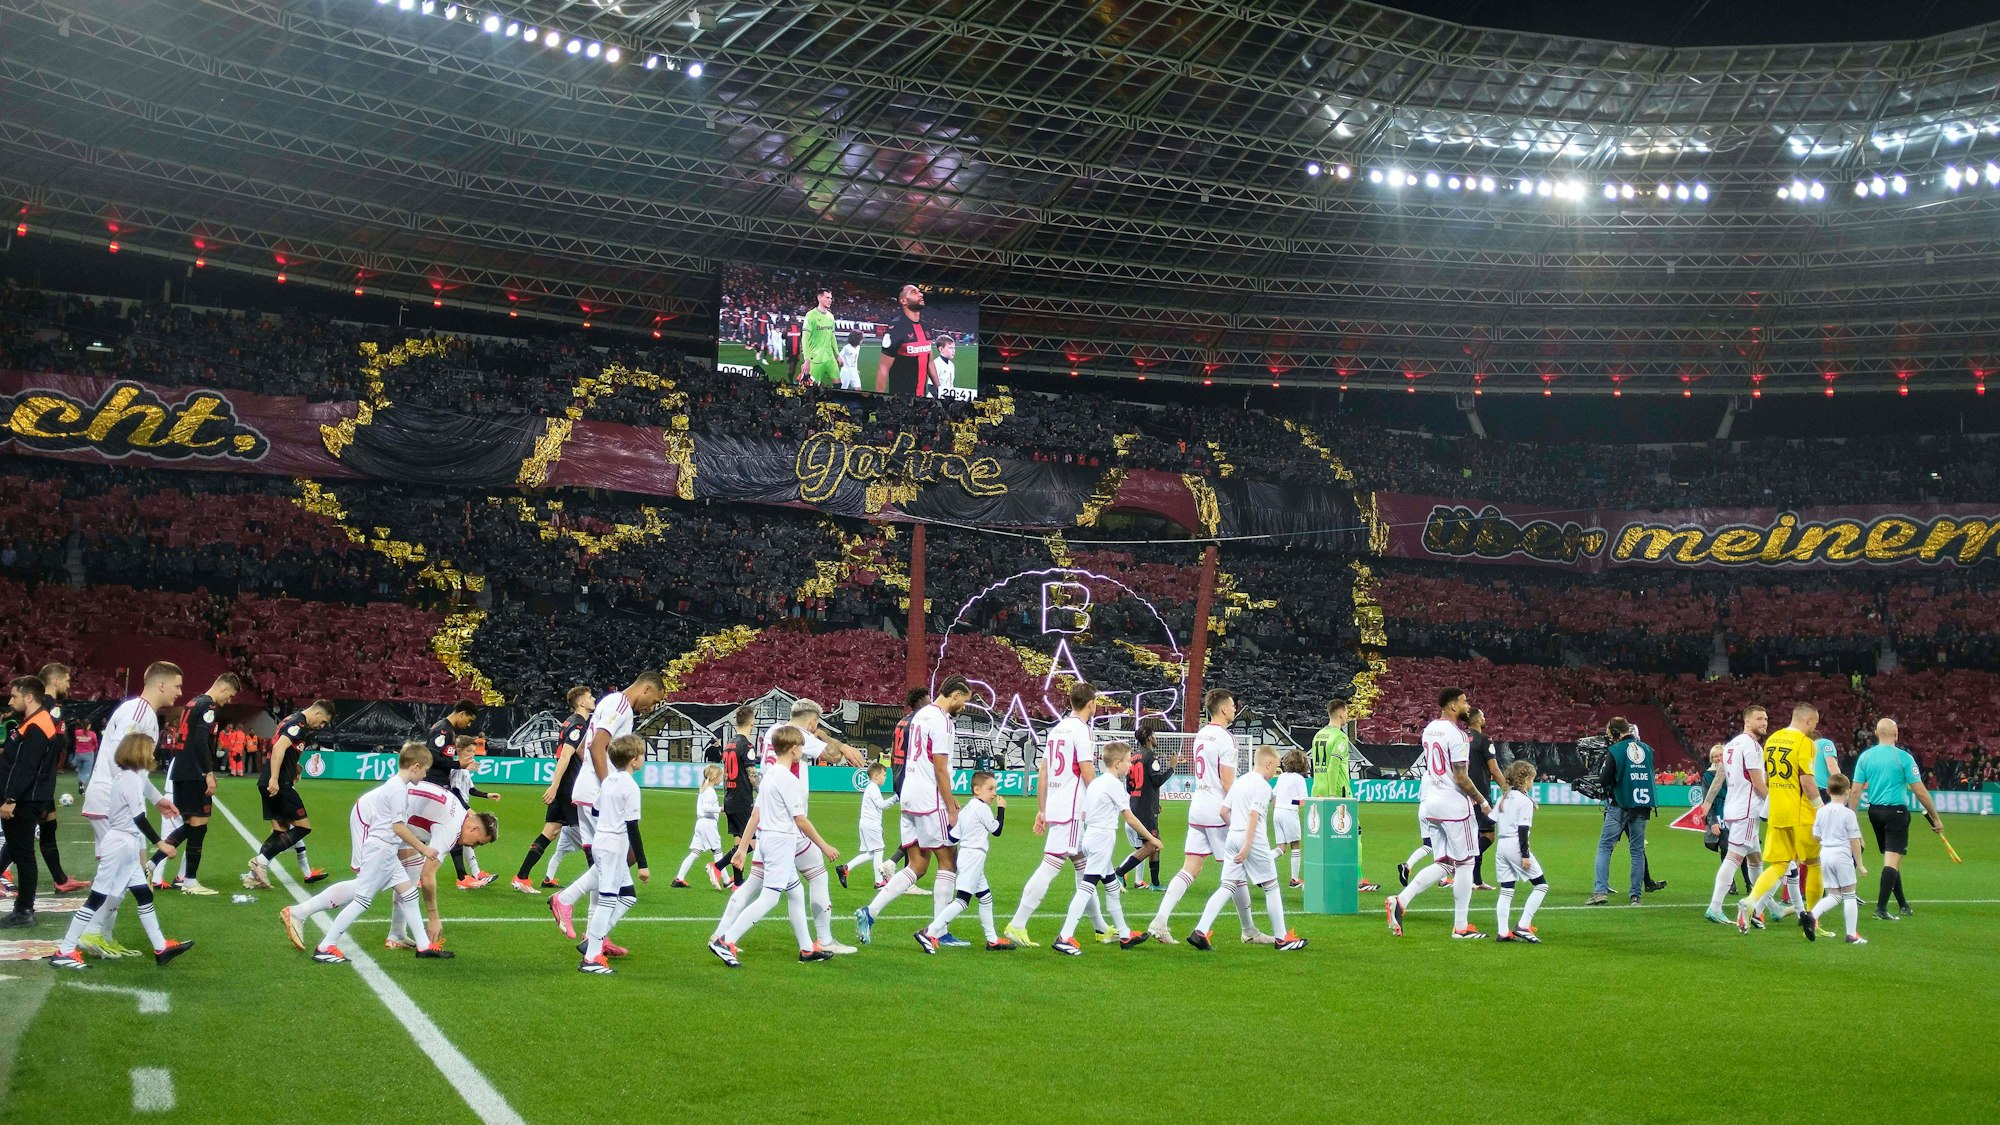 Beim Einlaufen der beiden Mannschaften präsentieren die Fans von Bayer Leverkusen vor dem Pokal-Halbfinale gegen Fortuna Düsseldorf eine große Choreografie.